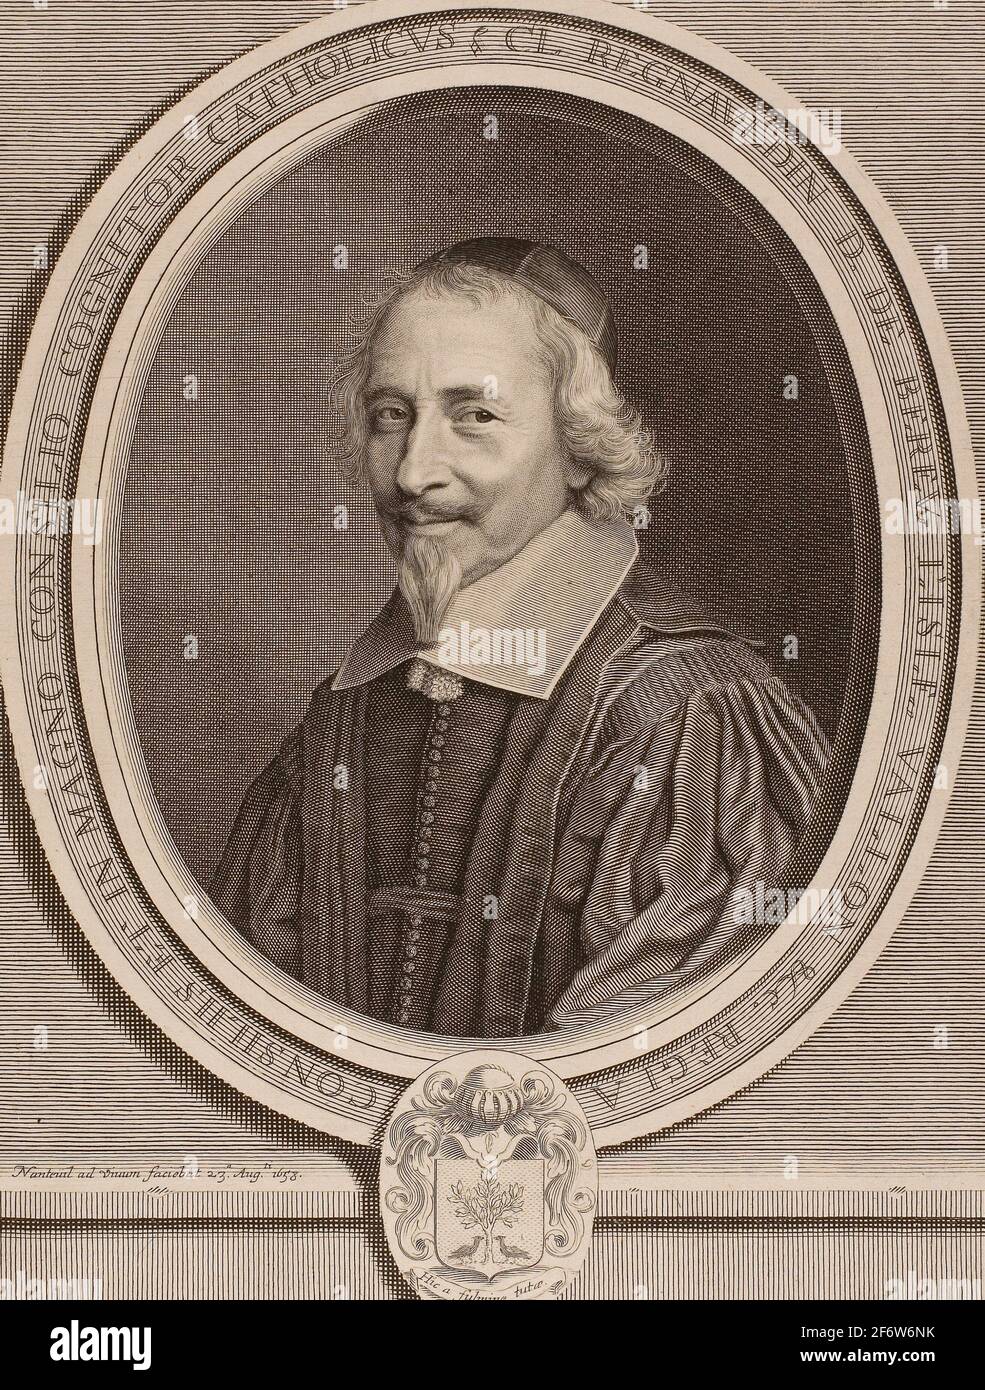 Auteur: Robert Nanteuil. Claude Regnauldin - 1658 - Robert Nanteuil Français, 1623-1678. Gravure sur papier. France. Banque D'Images